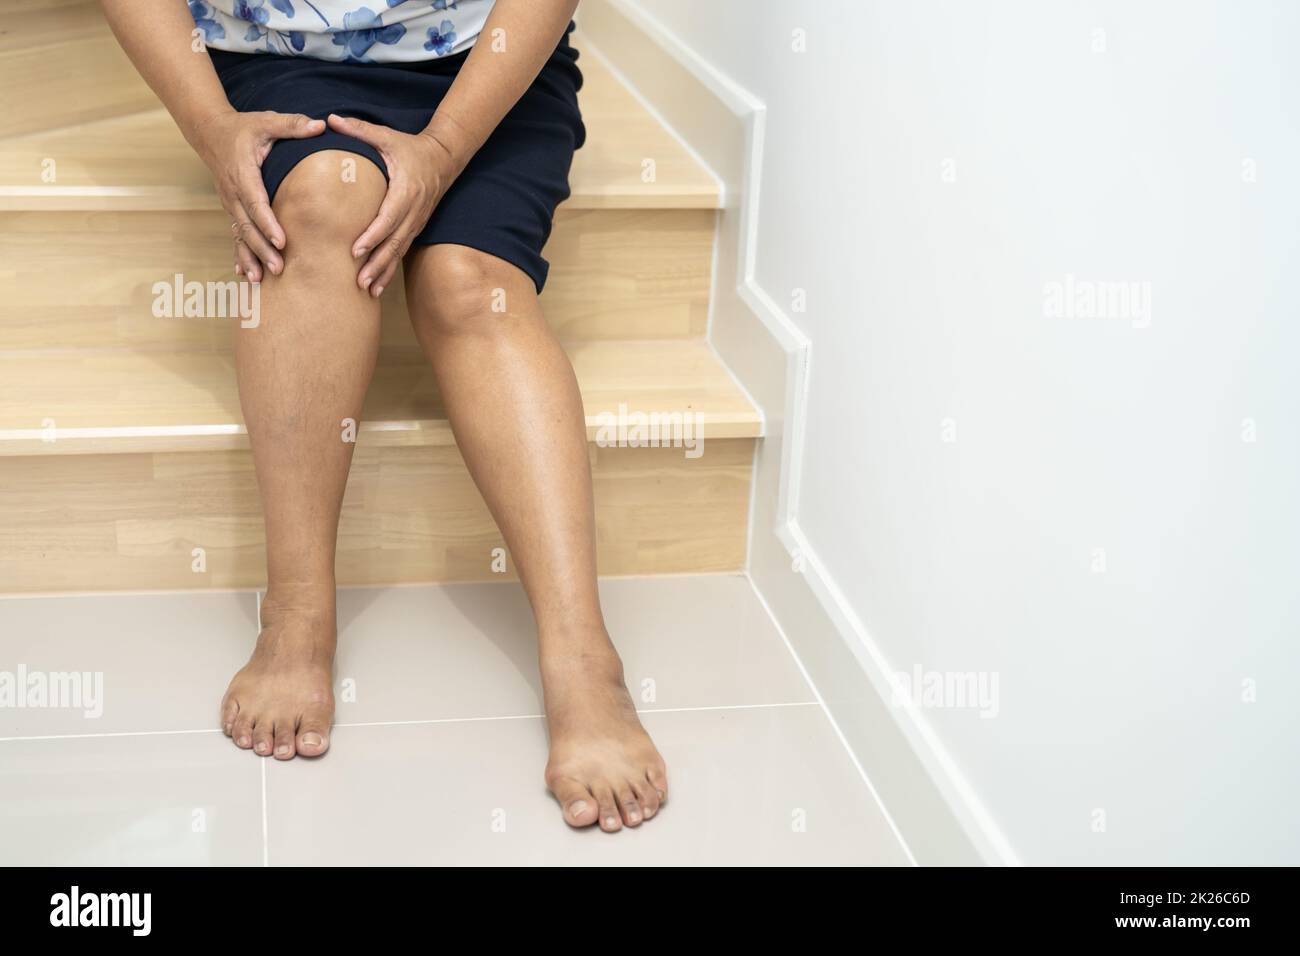 Asiatische Frau mittleren Alters Frau Patientin fallen die Treppe hinunter und Schmerzen ihr Knie, weil rutschige Oberflächen mit Kopieplatz. Stockfoto